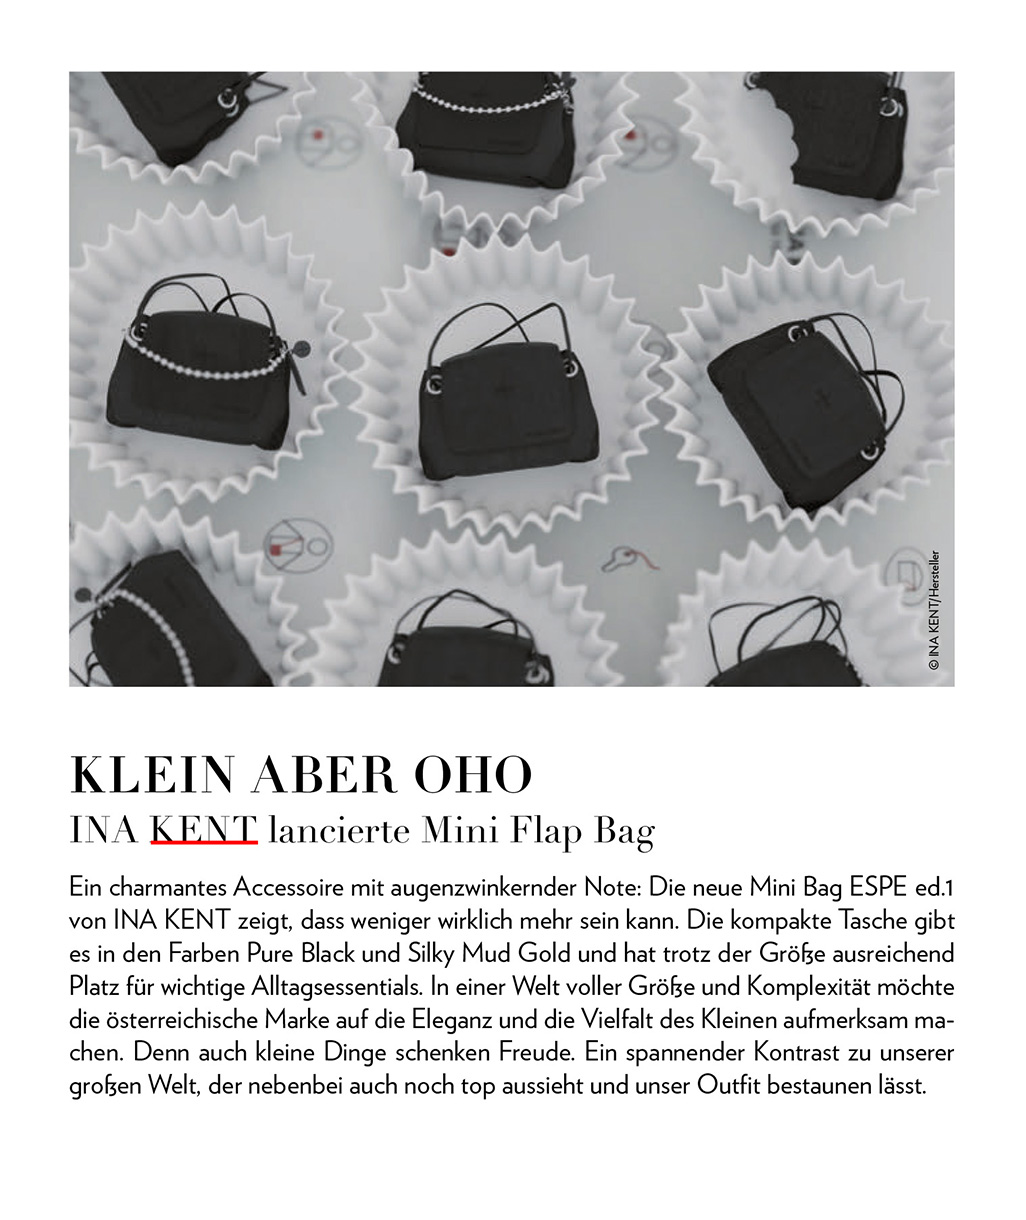 Ein Flyer präsentiert die INA KENT Mini Flap Bag mit drei eleganten schwarzen Handtaschen. Der Text hebt das kompakte und dennoch geräumige Design hervor, das in Pure Black und Silky Mud Gold erhältlich ist.